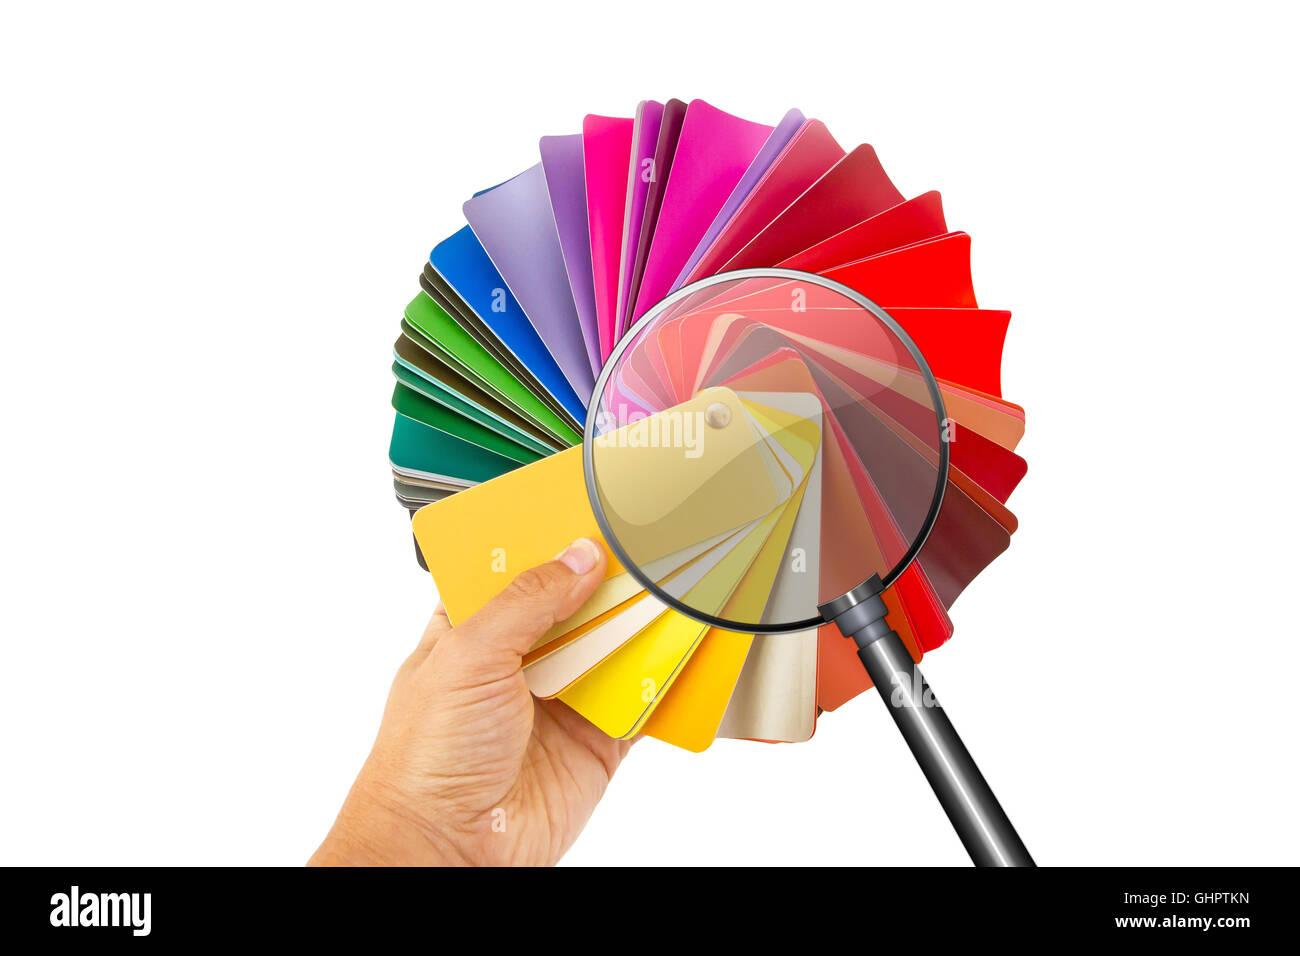 Rainbow tavolozza di colori con lente di ingrandimento, isolato su bianco Foto Stock